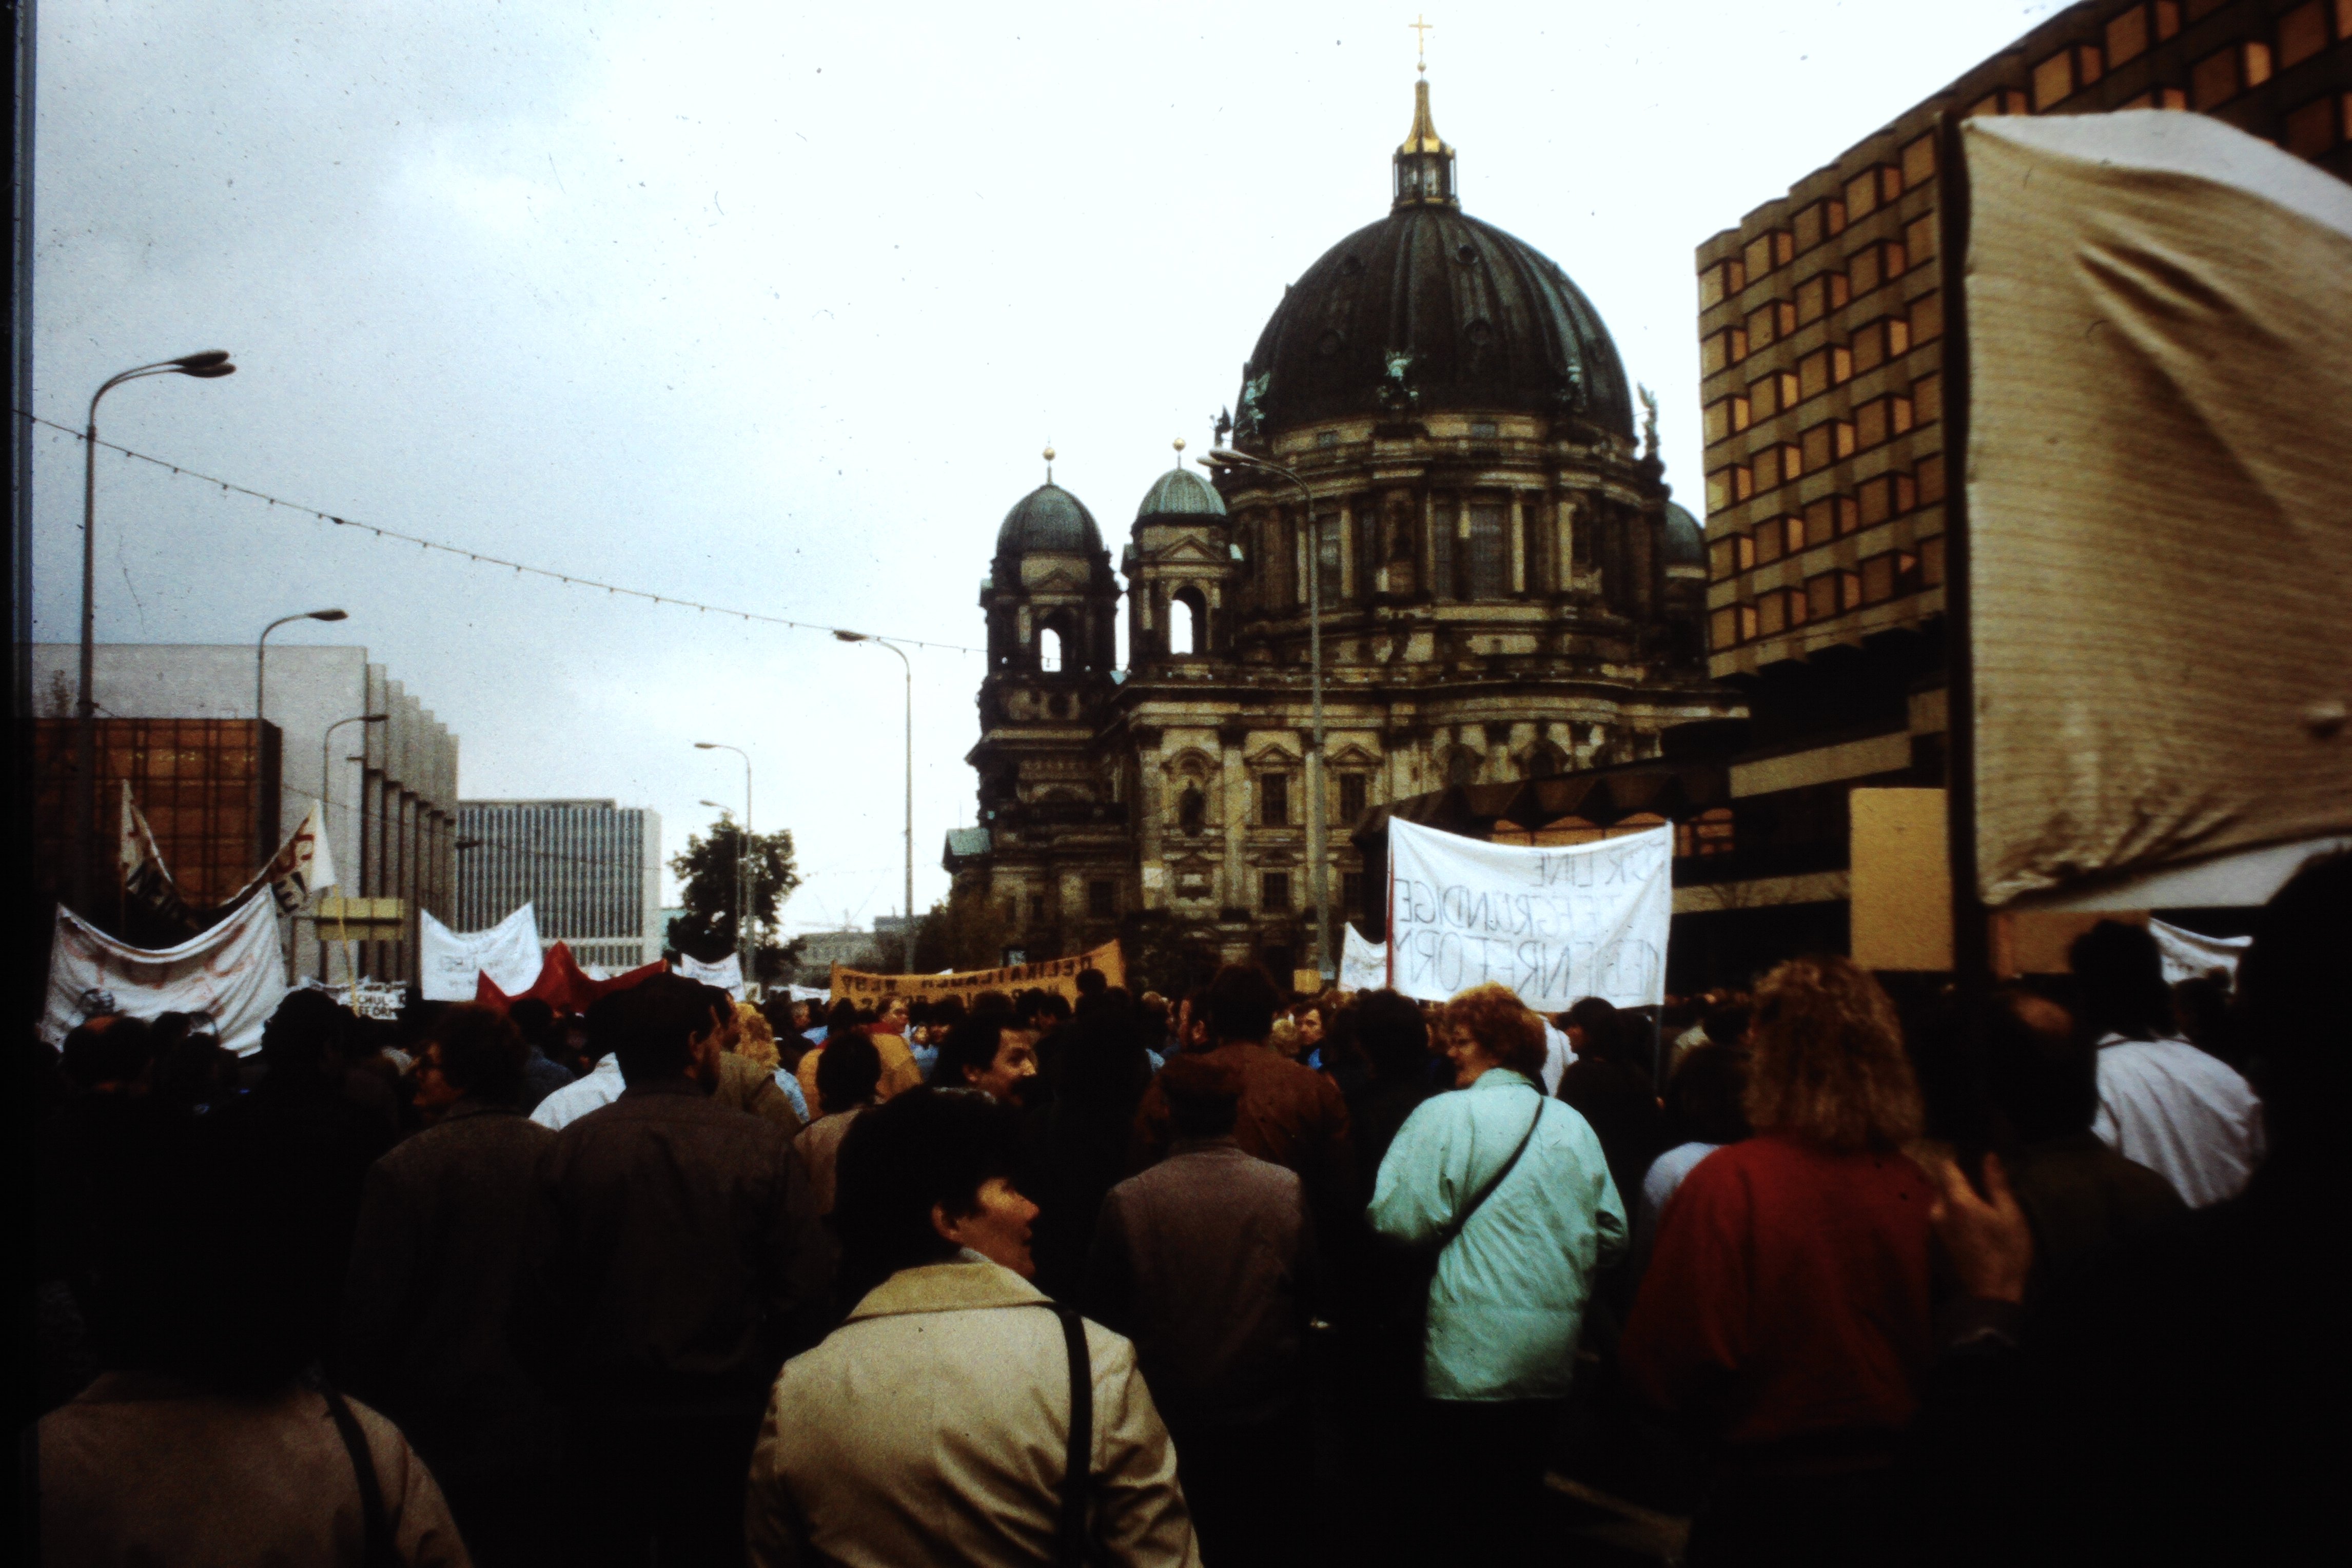 Großdemonstration in Ost-Berlin am 04. November 1989: Demonstranten vor dem Palast der Republik und Berliner Dom (DDR Geschichtsmuseum im Dokumentationszentrum Perleberg CC BY-SA)